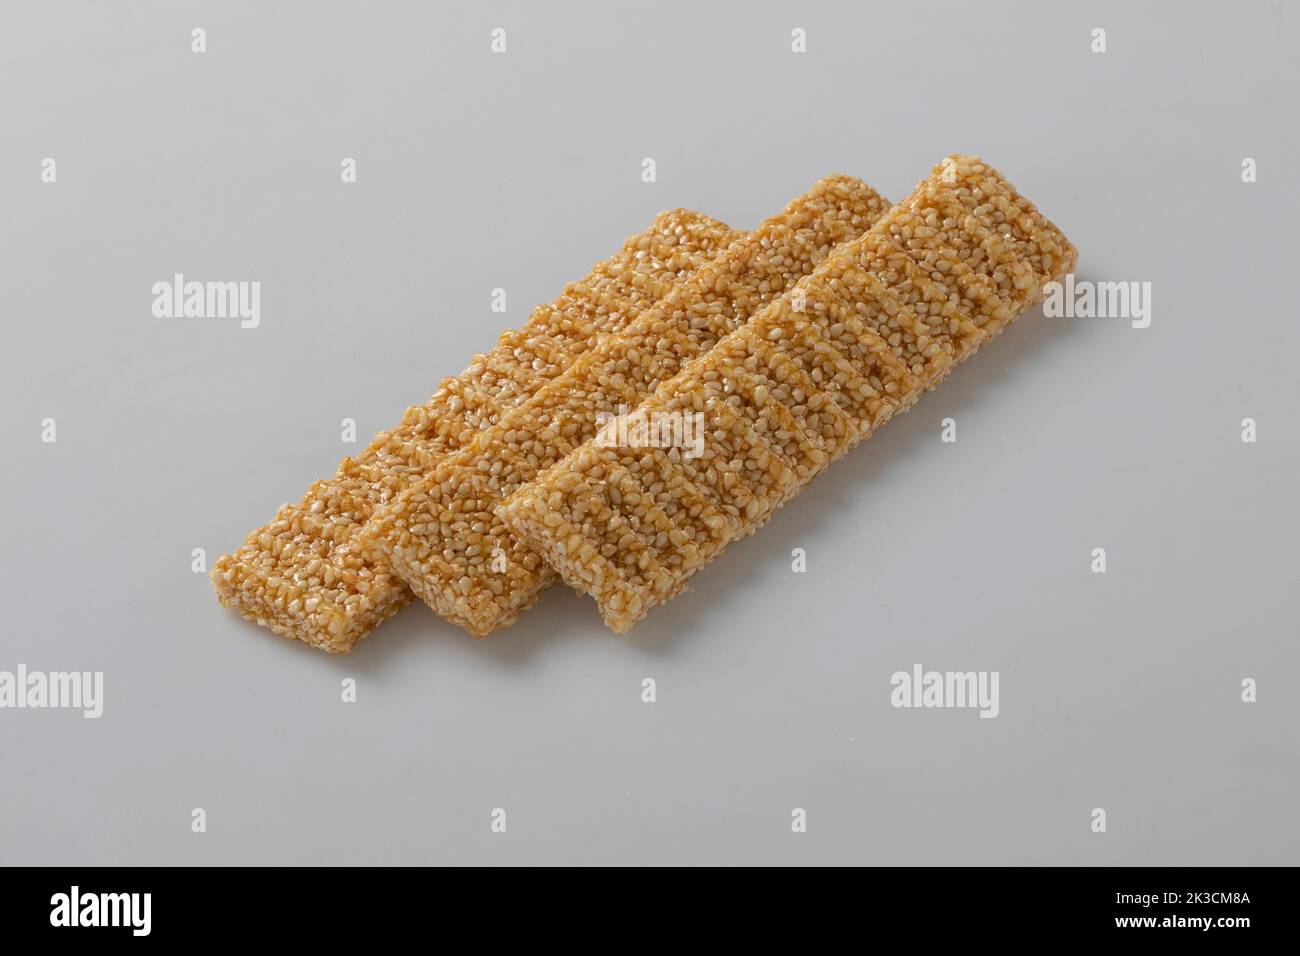 Sesamsamen-Bonbons, in einer Holzschale. Sesam spröde oder Crunch, eine Konfektion aus Sesamsamen und Honig, der in flache Riegel gepresst wird, ein beliebter Snack Stockfoto